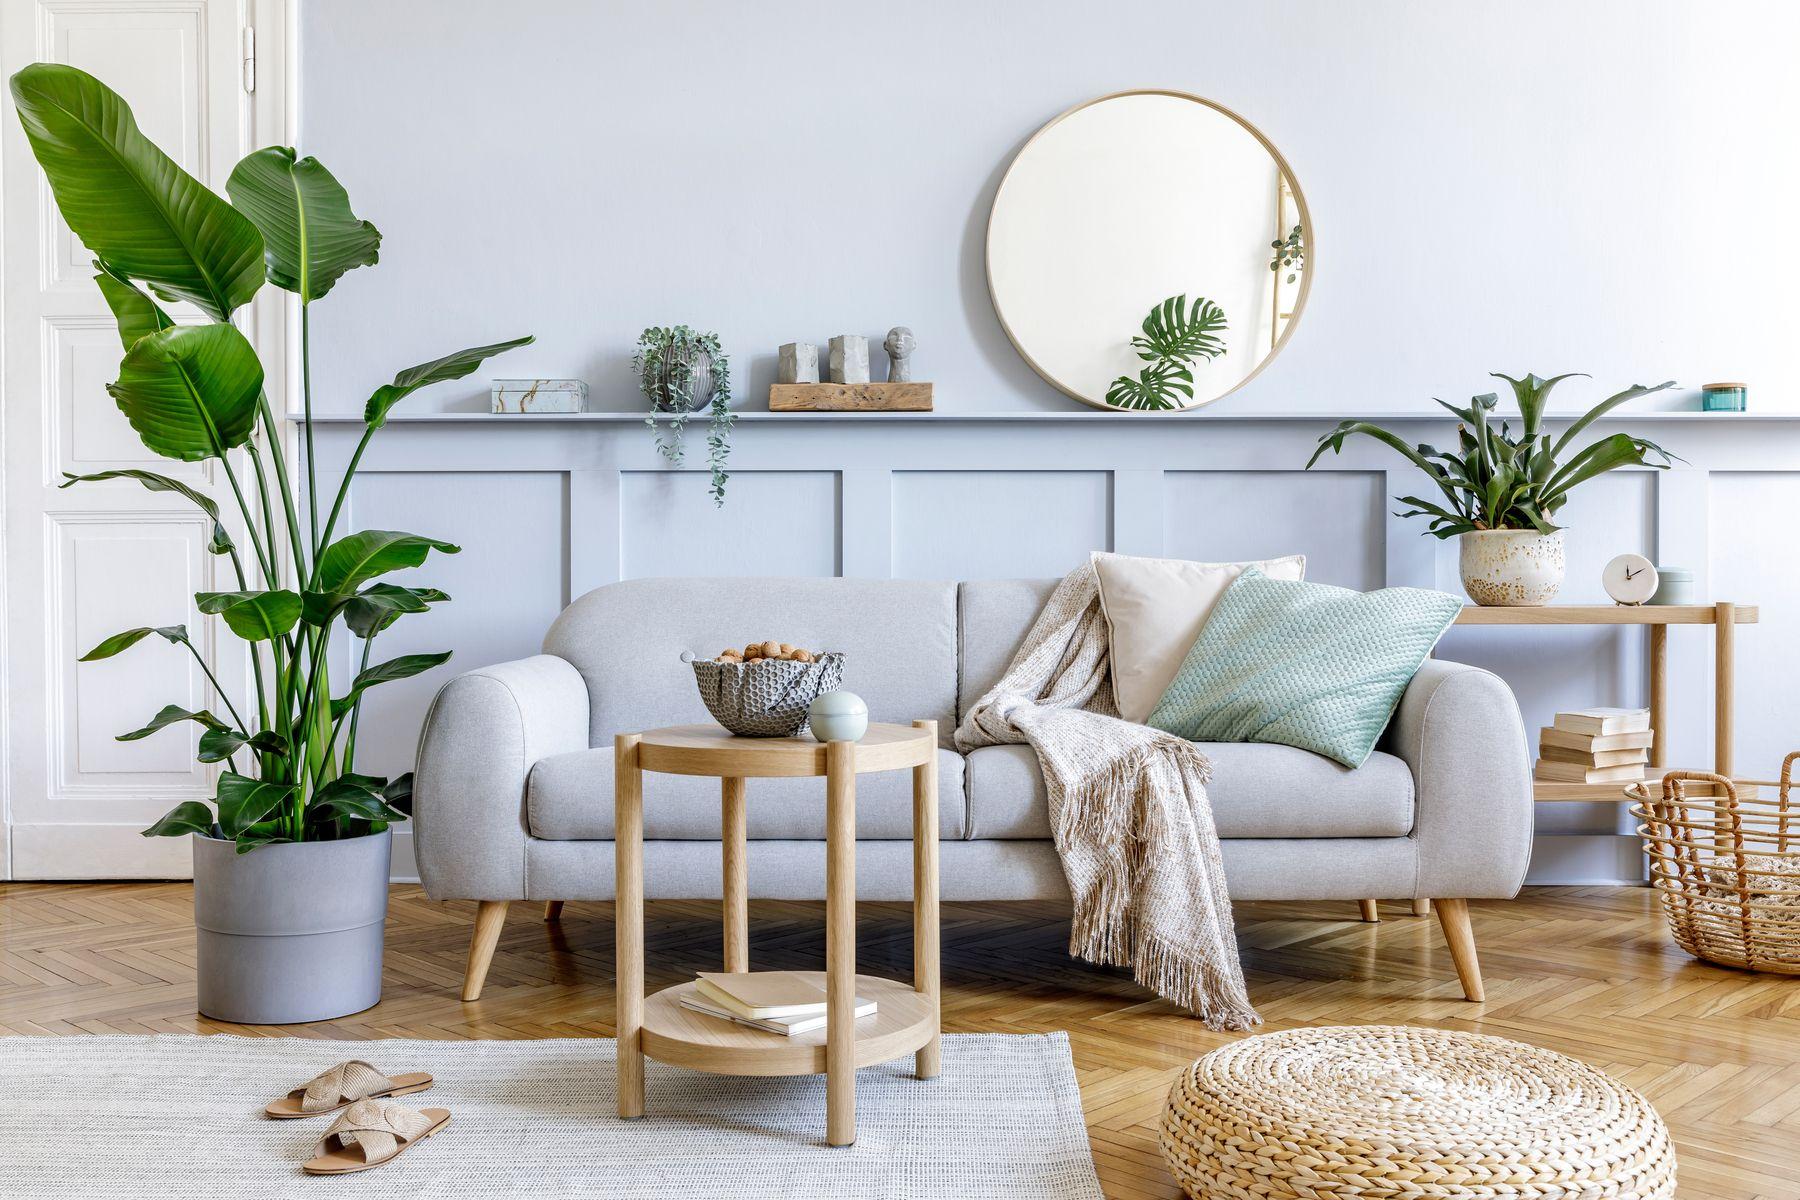 Grå soffa i skandinaviskt hem med rund spegel ovanför bröstpanel på väggen. Gröna växter, kuddar och filtar.